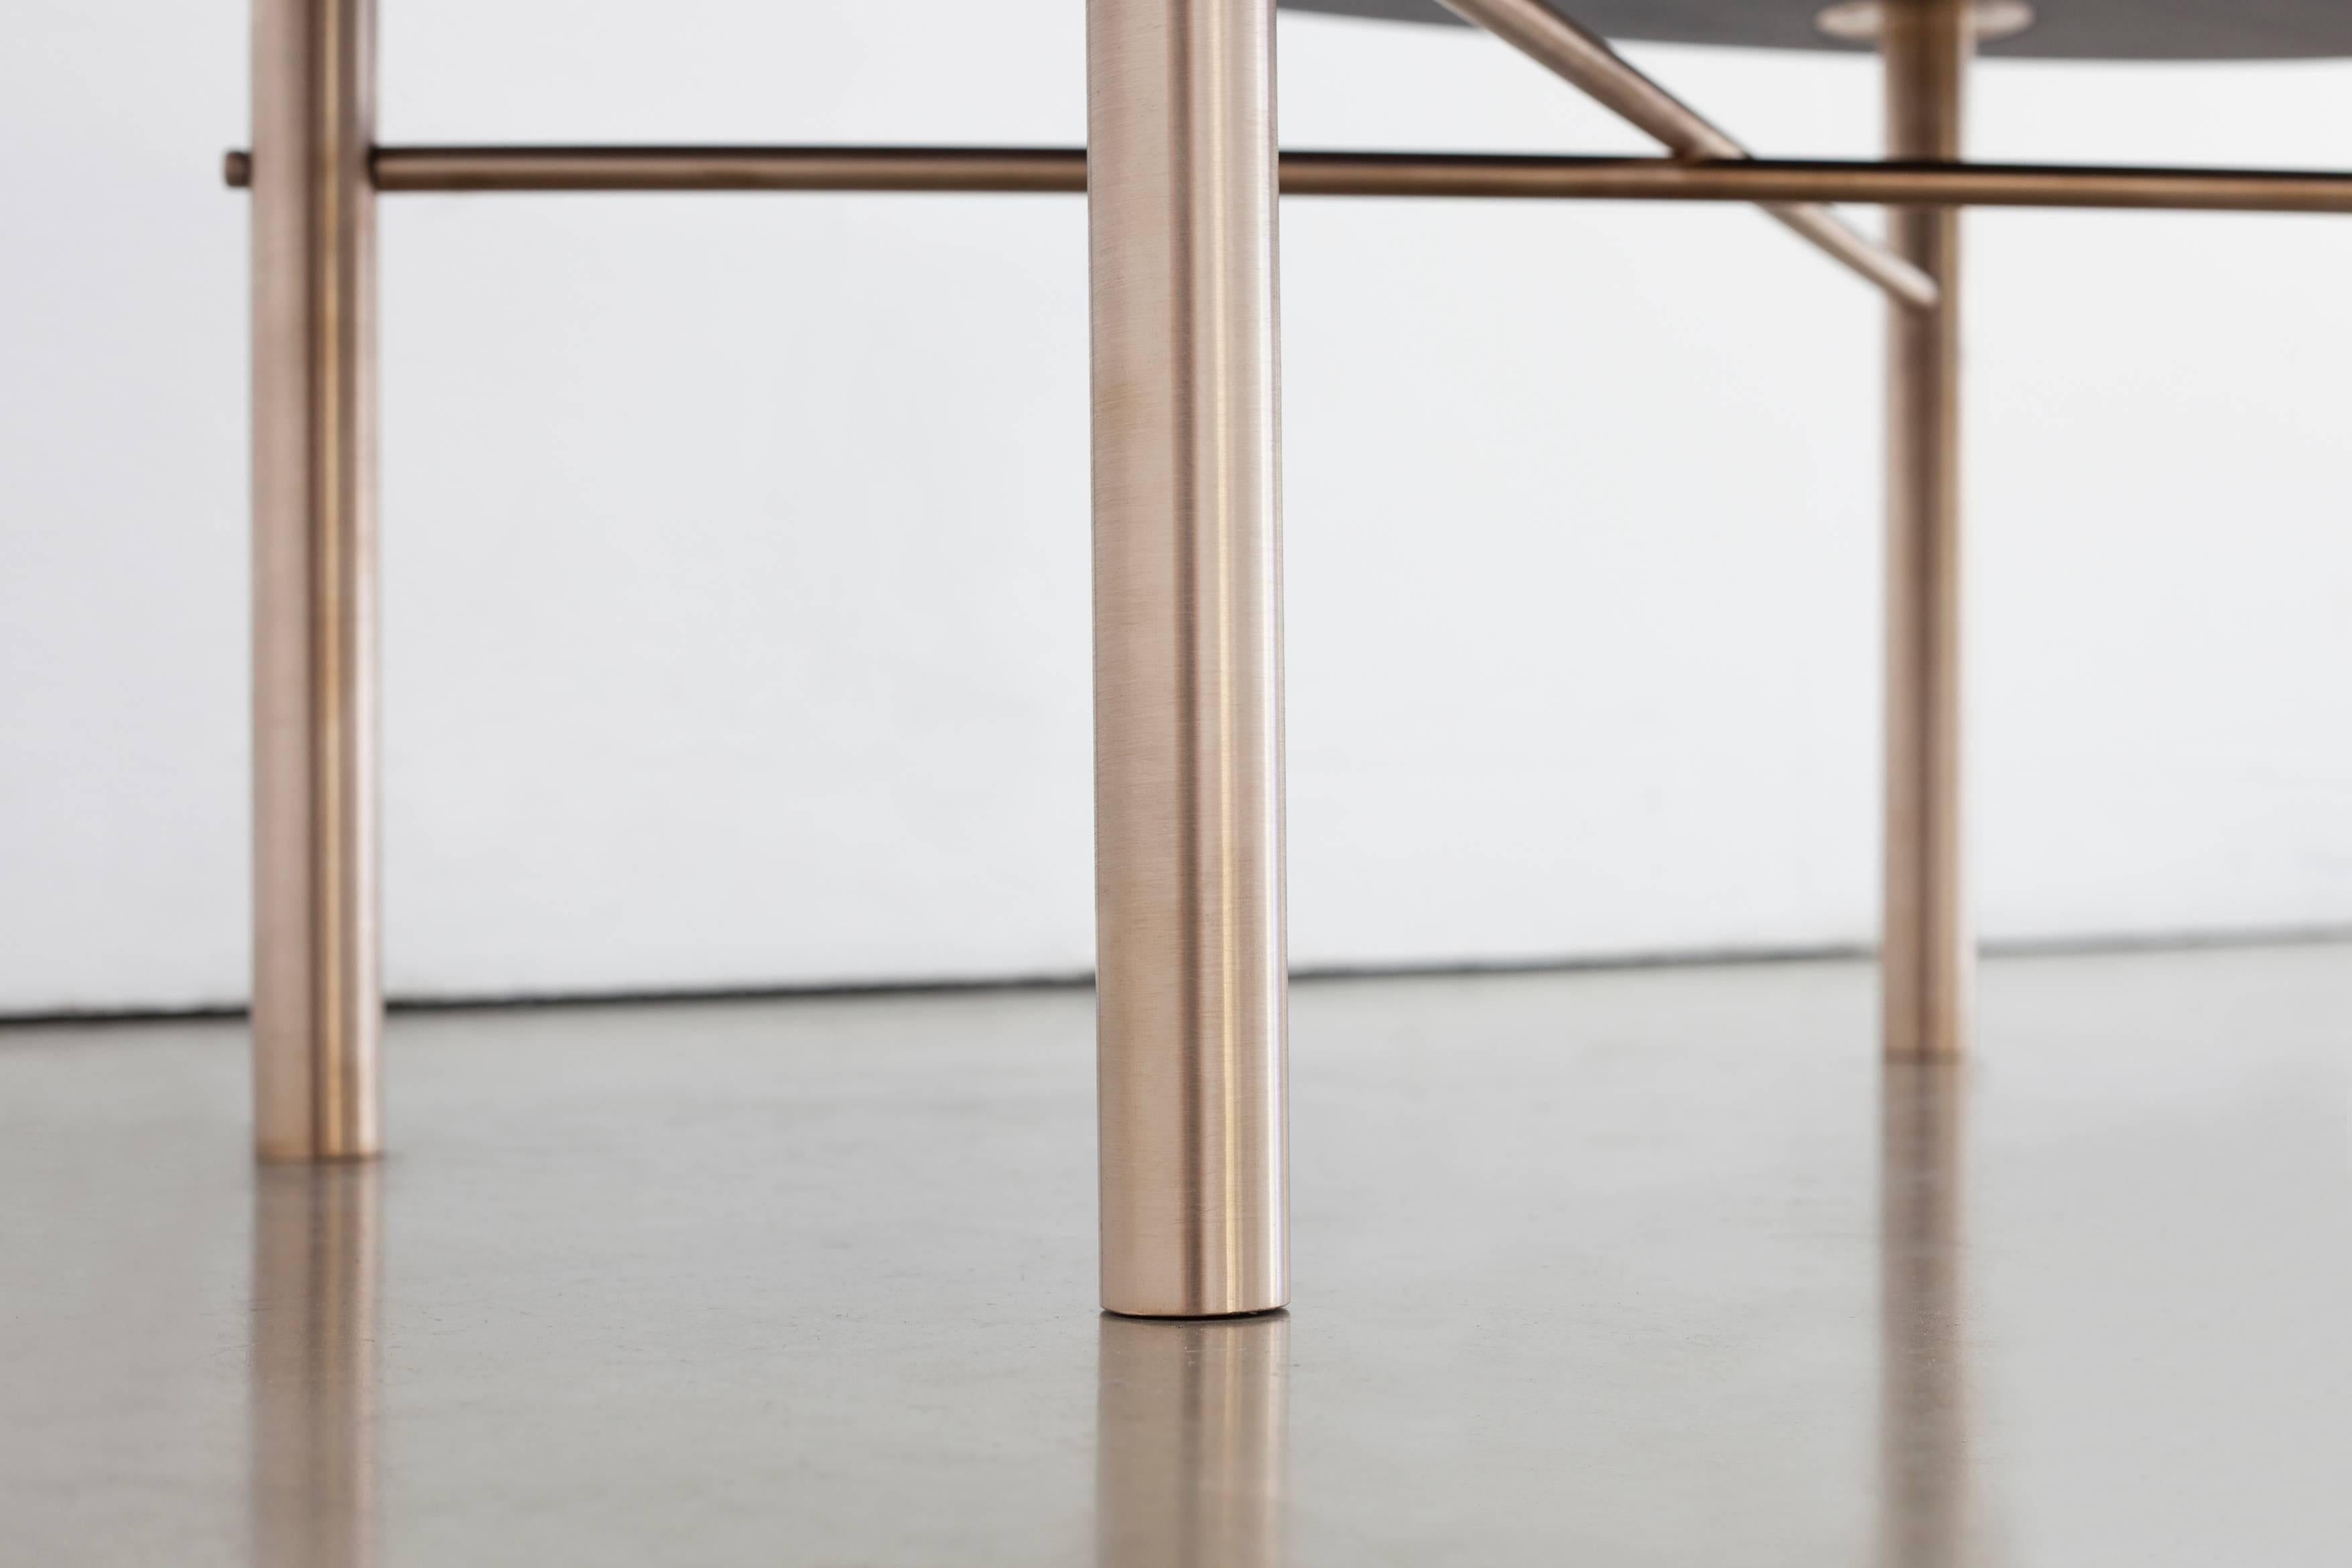 La table basse Connect est fabriquée en bois dur domestique carbonisé et laqué et en bronze massif. Sa conception est une référence visuelle au processus de fabrication. Les qualités de base des matériaux sont présentées simplement afin de créer un